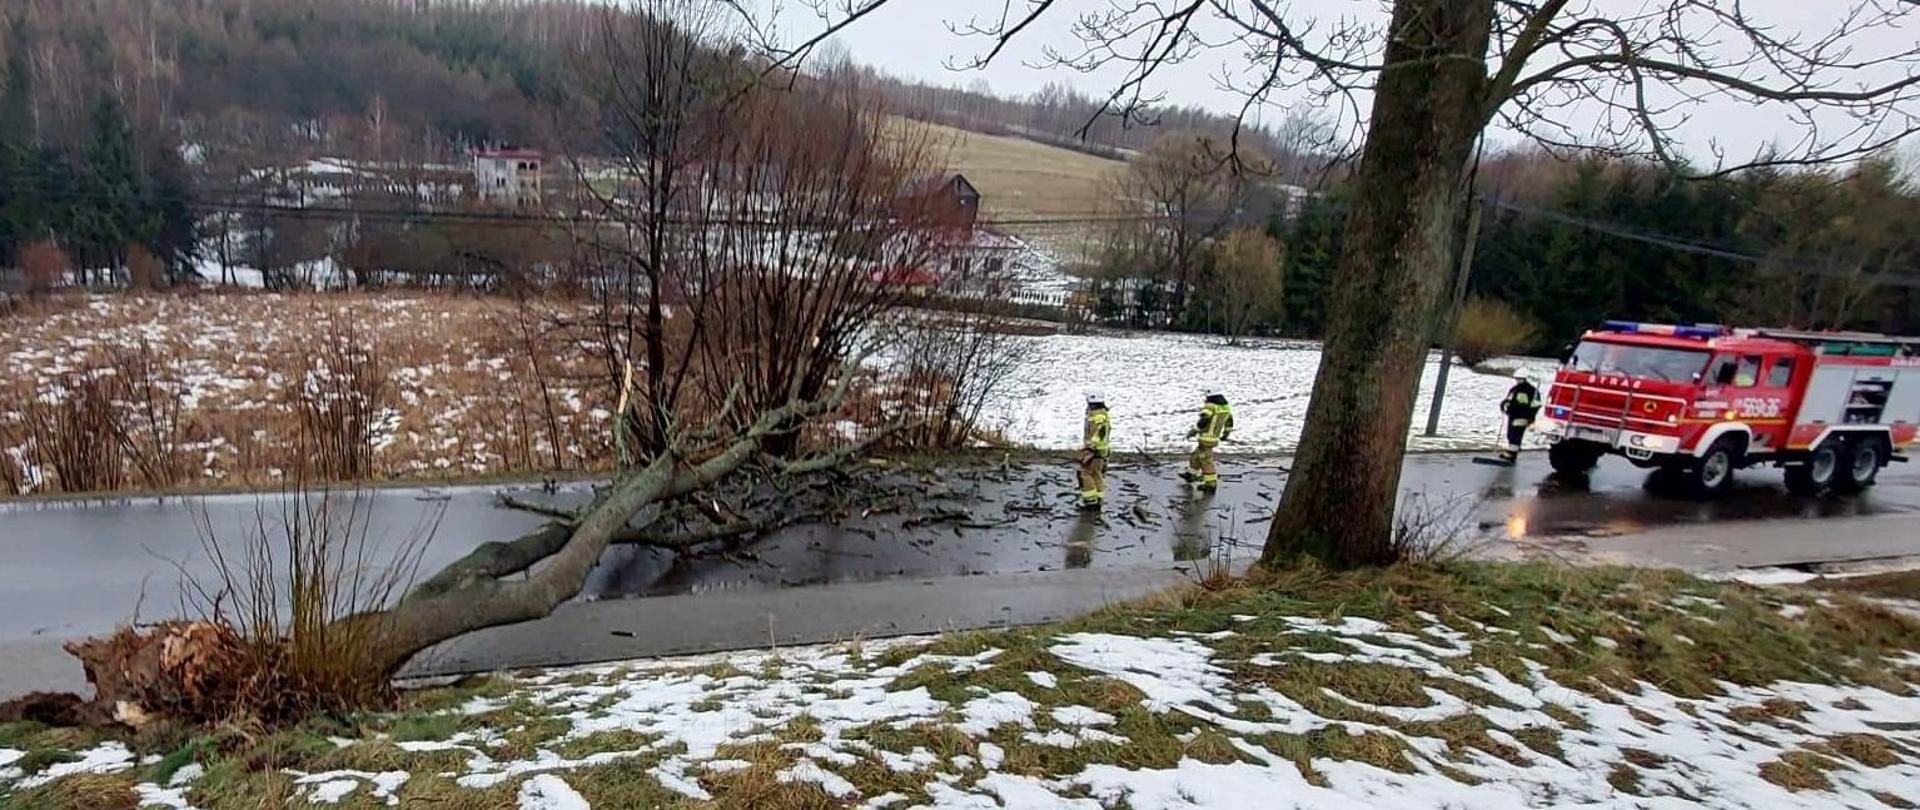 Zdjęcie zrobione na zewnątrz. Na pierwszym planie wywrócone drzewo, samochód strażacki oraz strażacy usuwający drzewo z jezdni. 